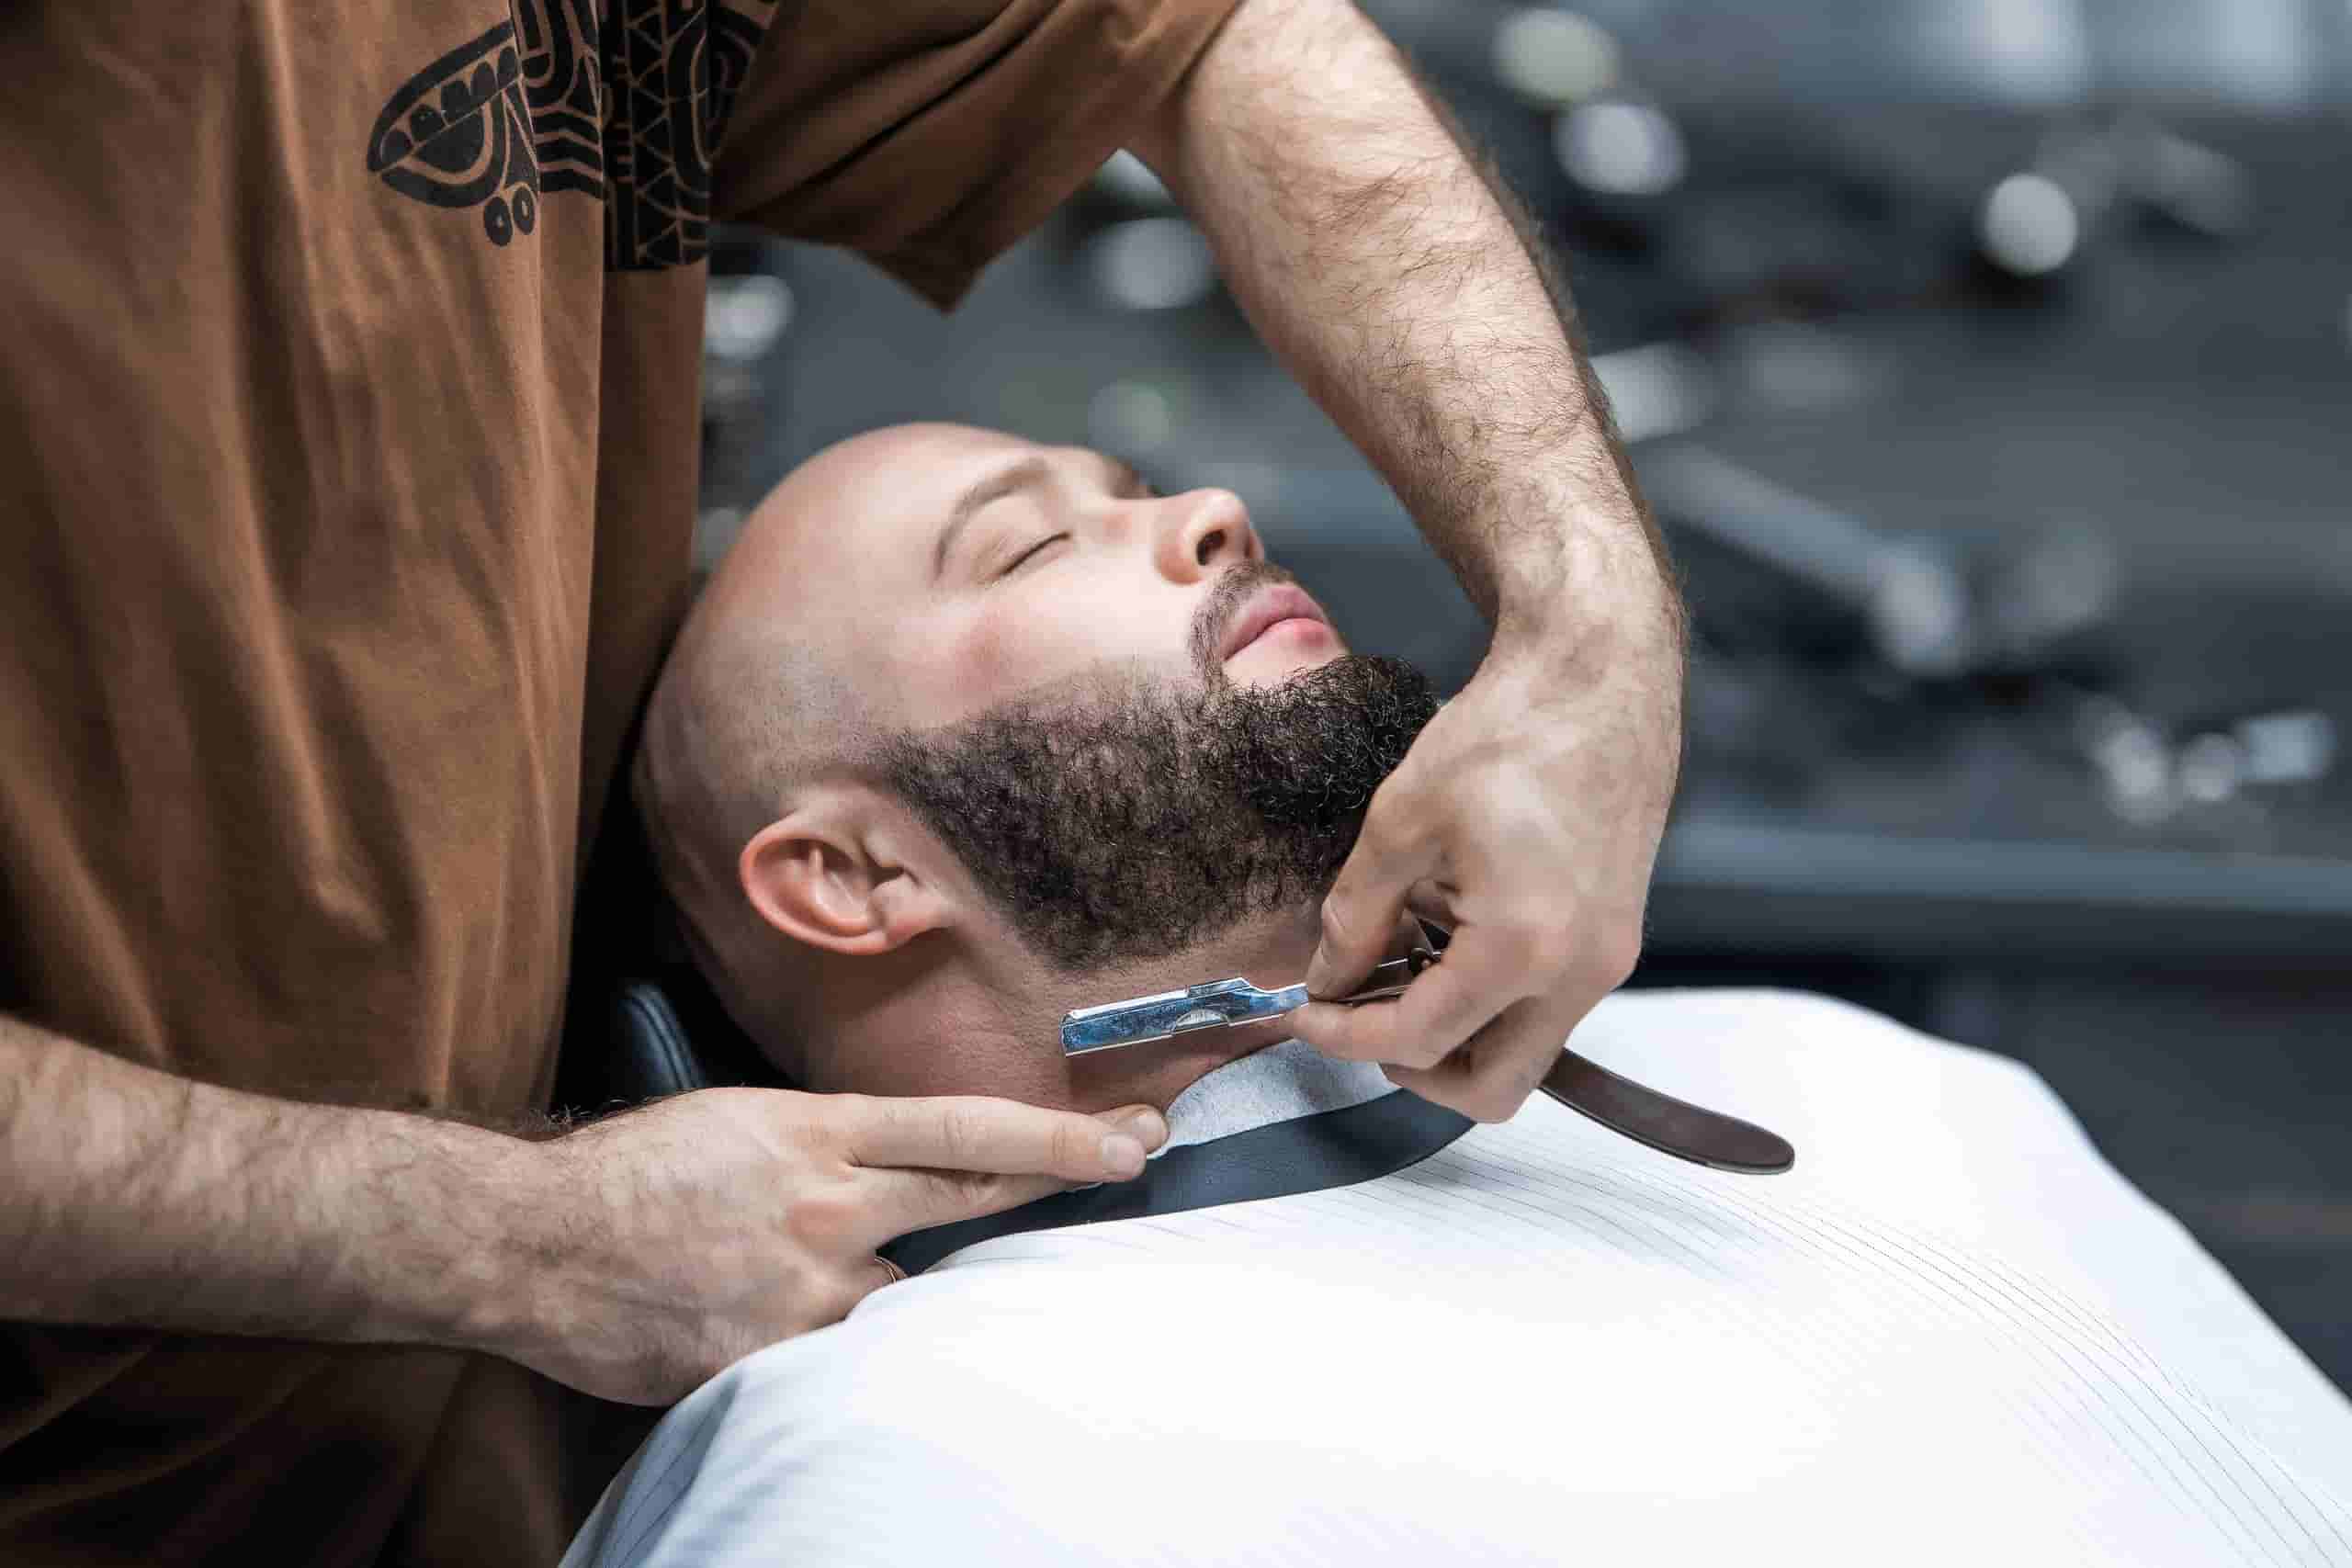 Оформление бороды опасной бритвой в барбершопе ШЕР